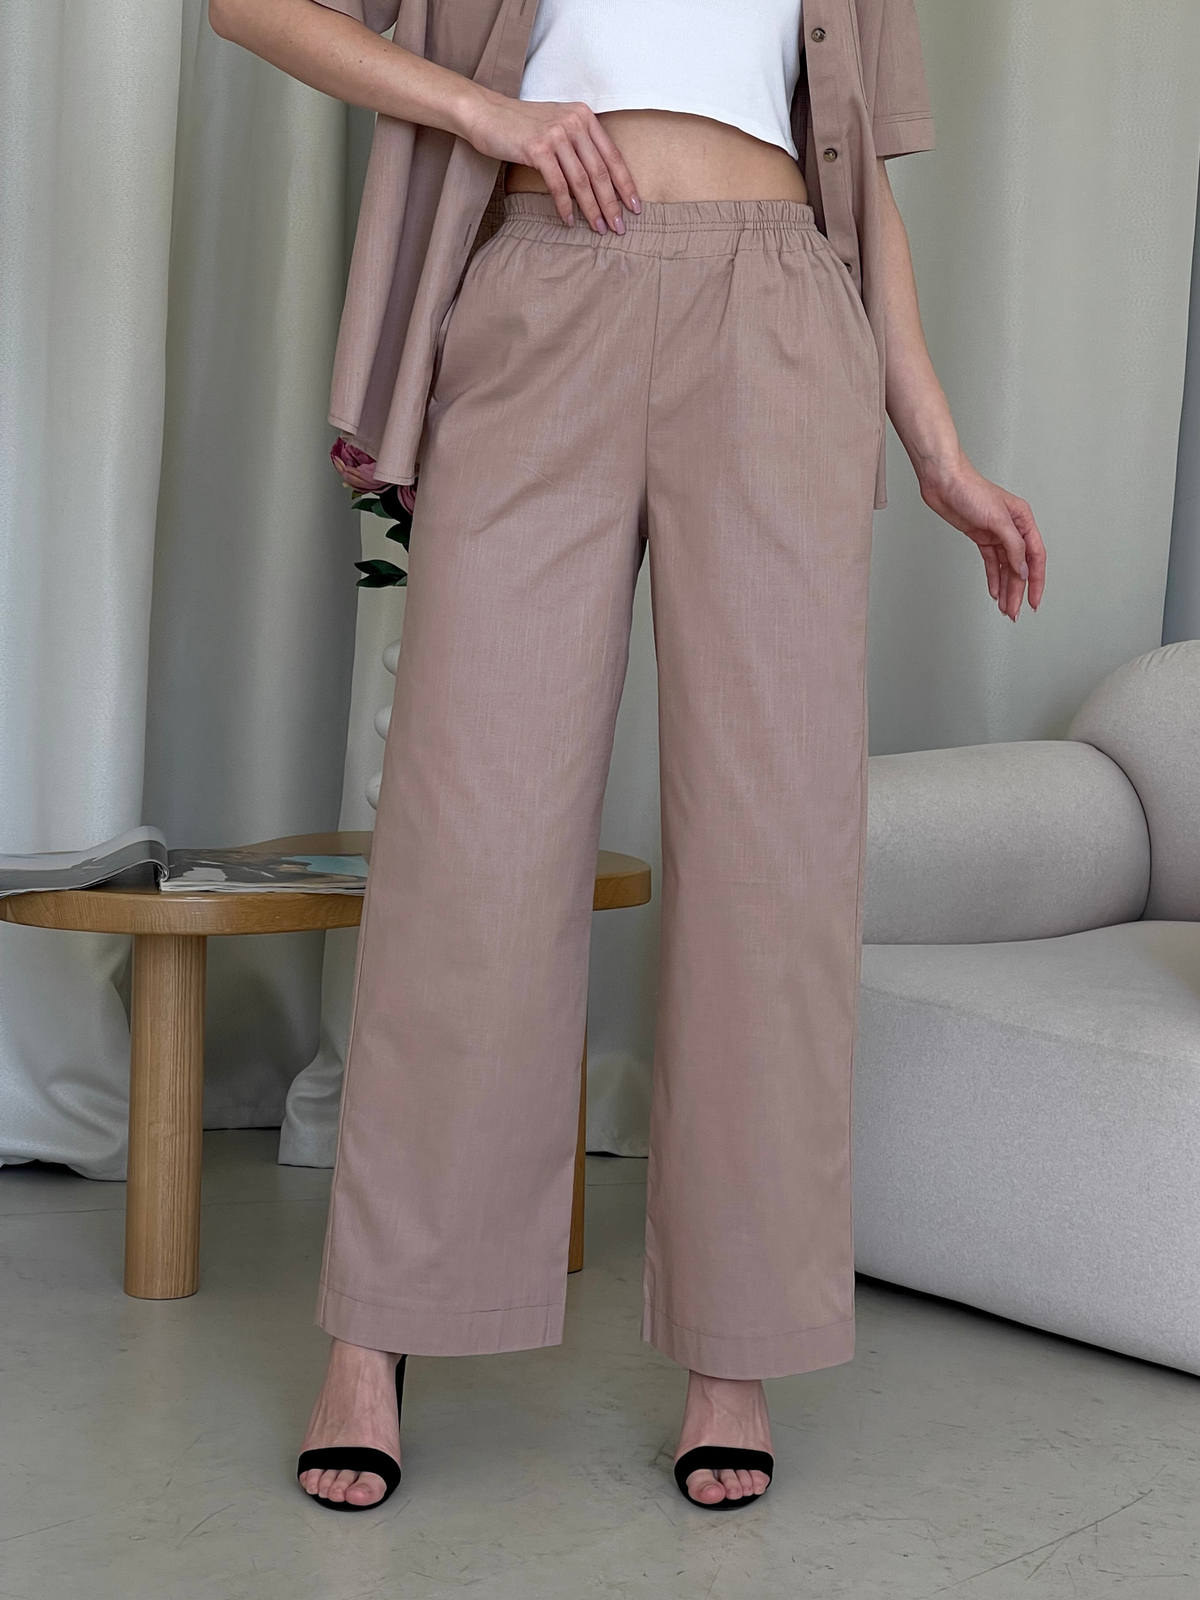 Купить Льняной костюм с штанами палаццо и рубашкой бежевый Лорен 100001204 размер 42-44 (S-M) в интернет-магазине